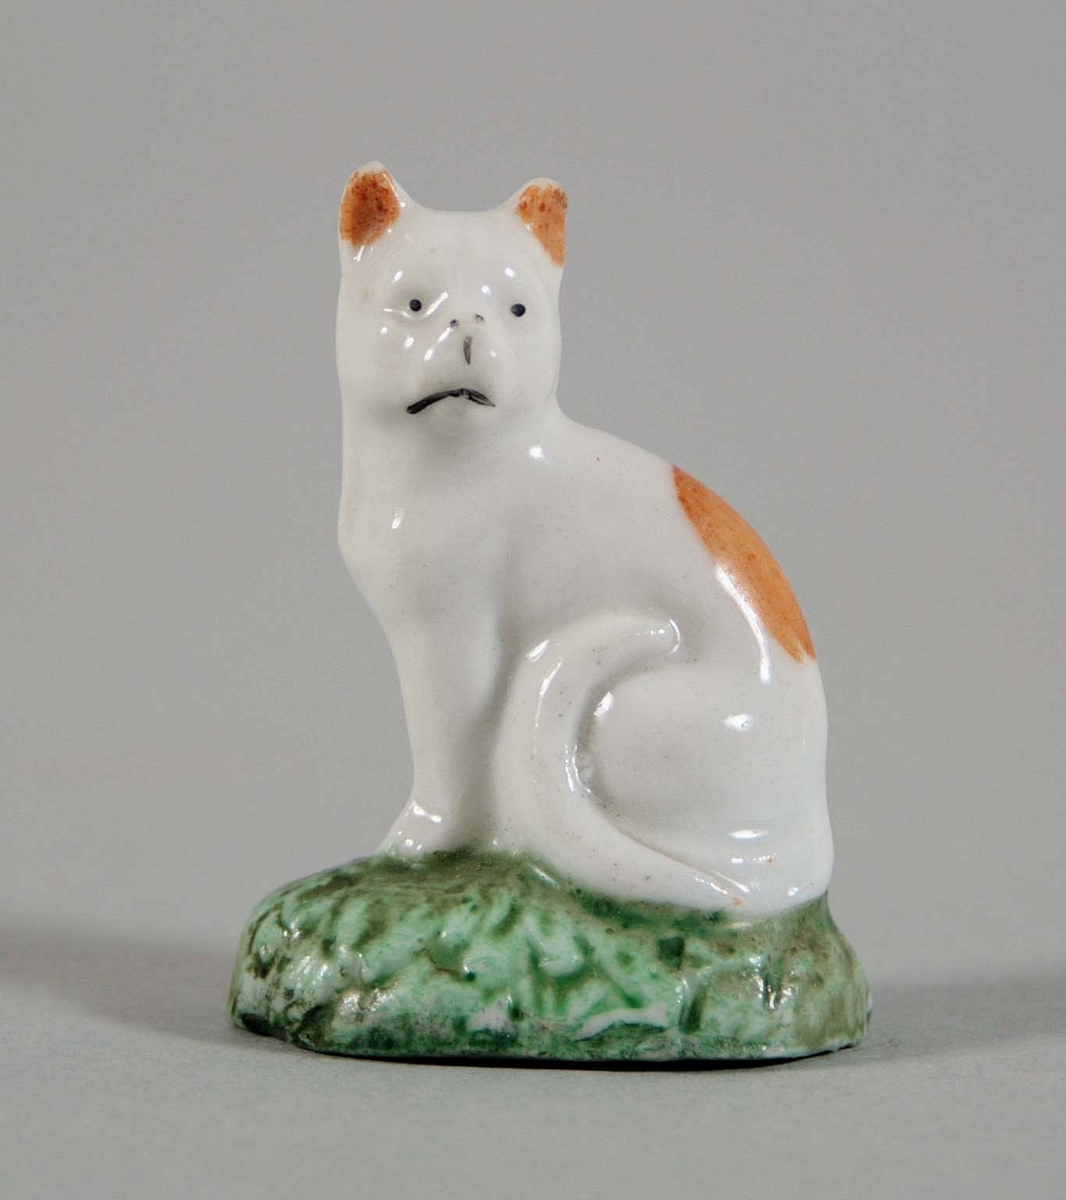 Sittande katt på oval sockel i vitglaserat porslin, med öron och ryggparti i brunt. Grönmålad sockel i form av grästuva.